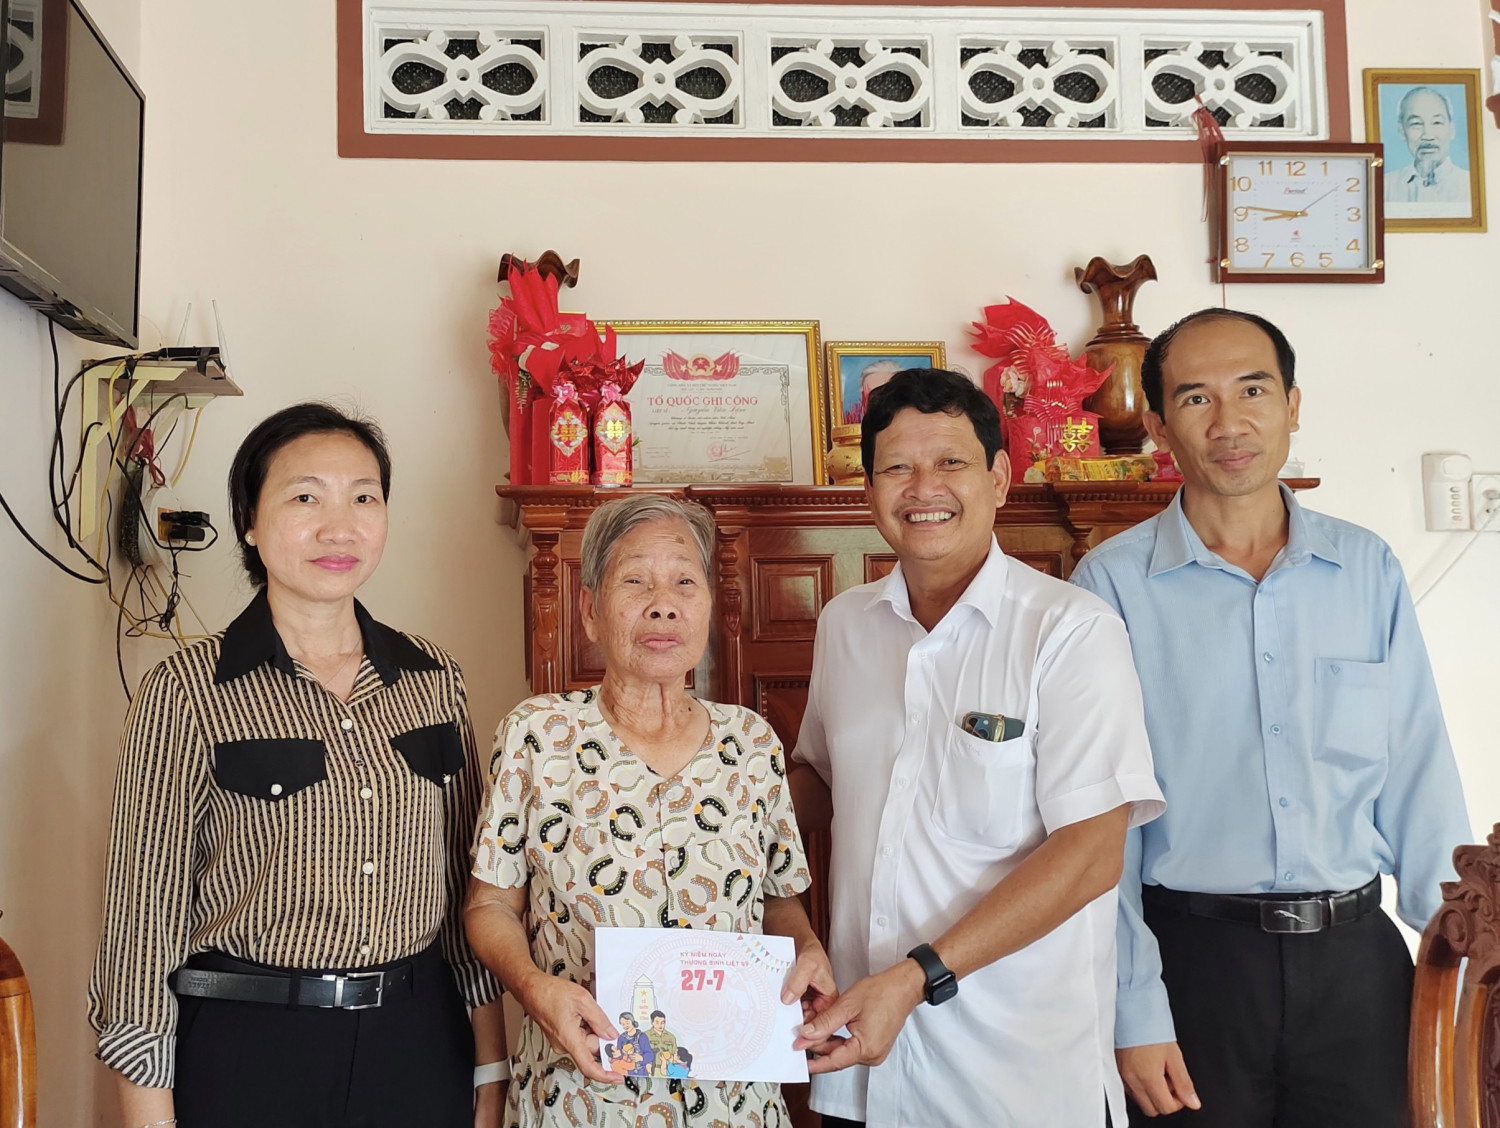 Đồng chí Nguyễn Thành Tiễn, Bí thư Huyện uỷ Châu Thành thăm và tặng quà cho gia đình chính sách trên địa bàn xã Phước Vinh